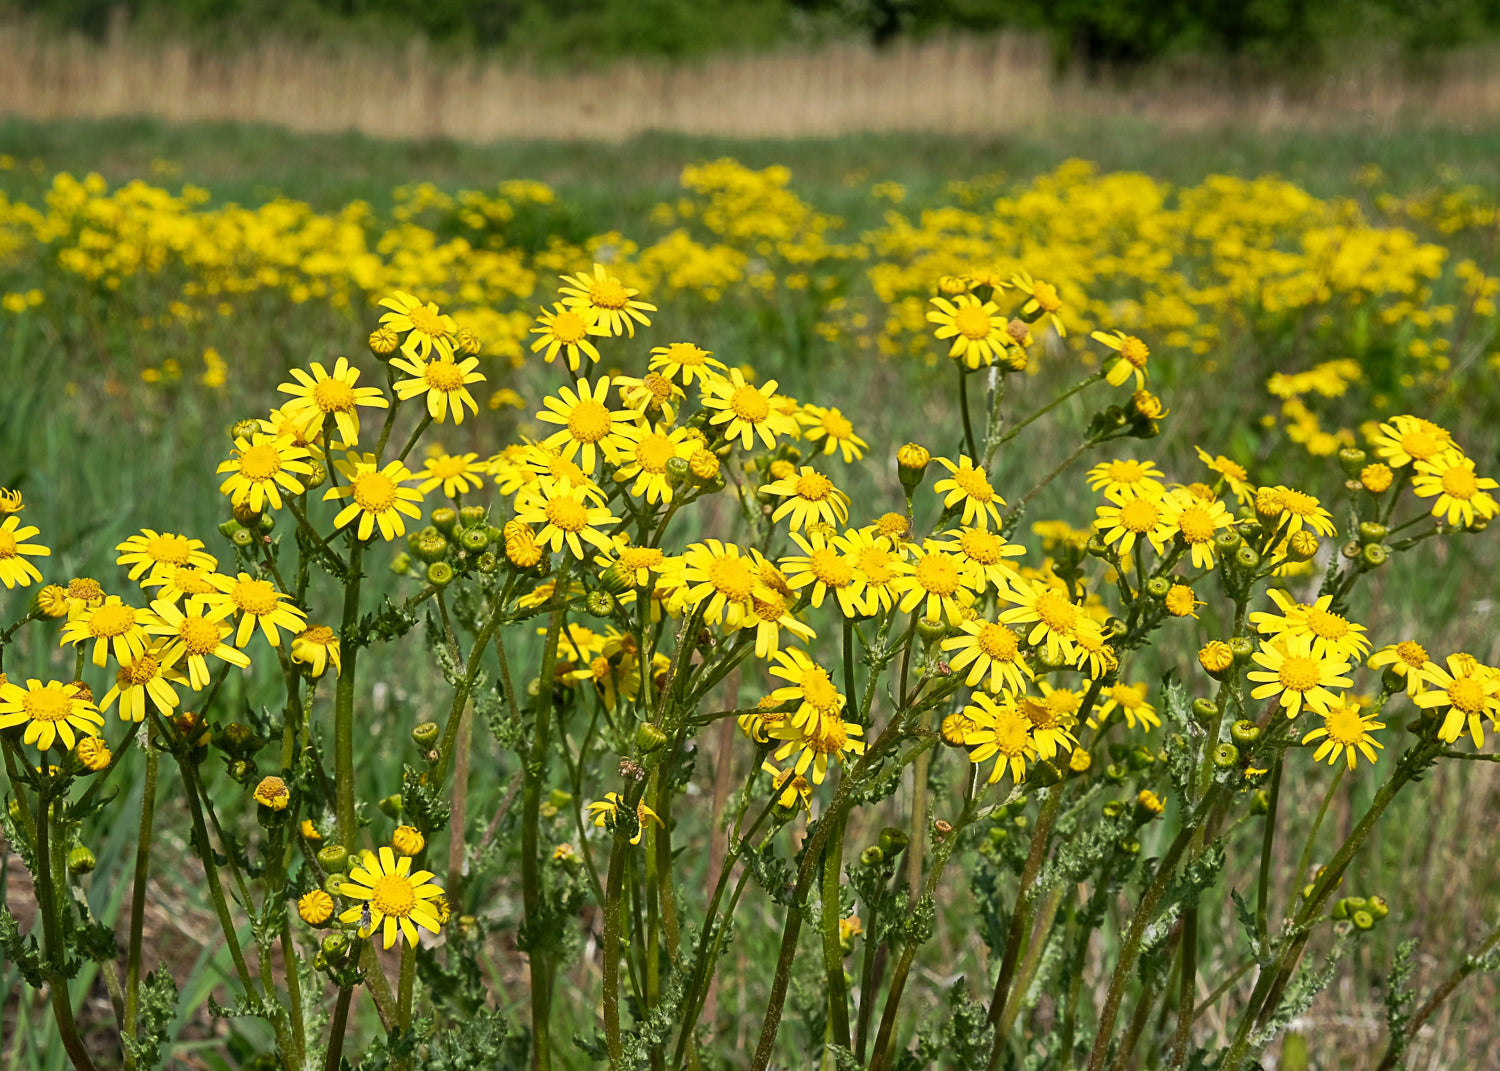 summer ragwort growing in a field